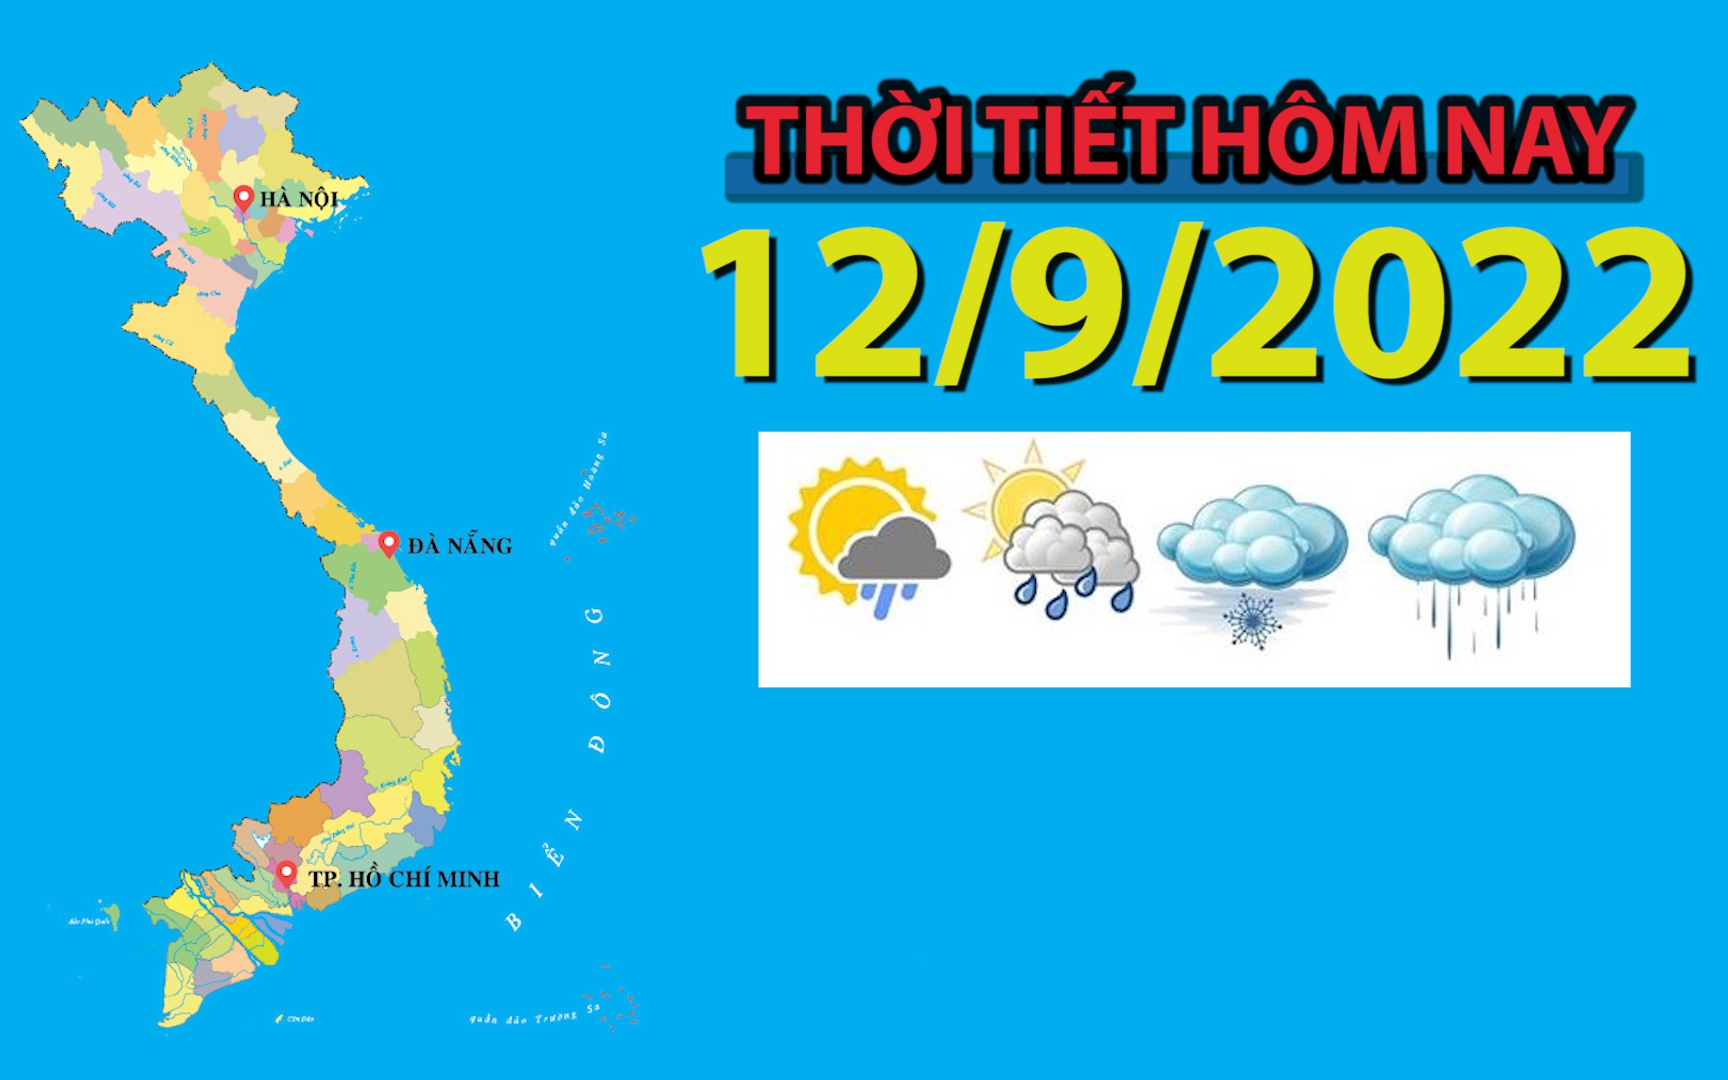 Thời tiết hôm nay 12/9/2022: Hà Nội ngày nắng, nhiệt độ cao nhất 34 độ C